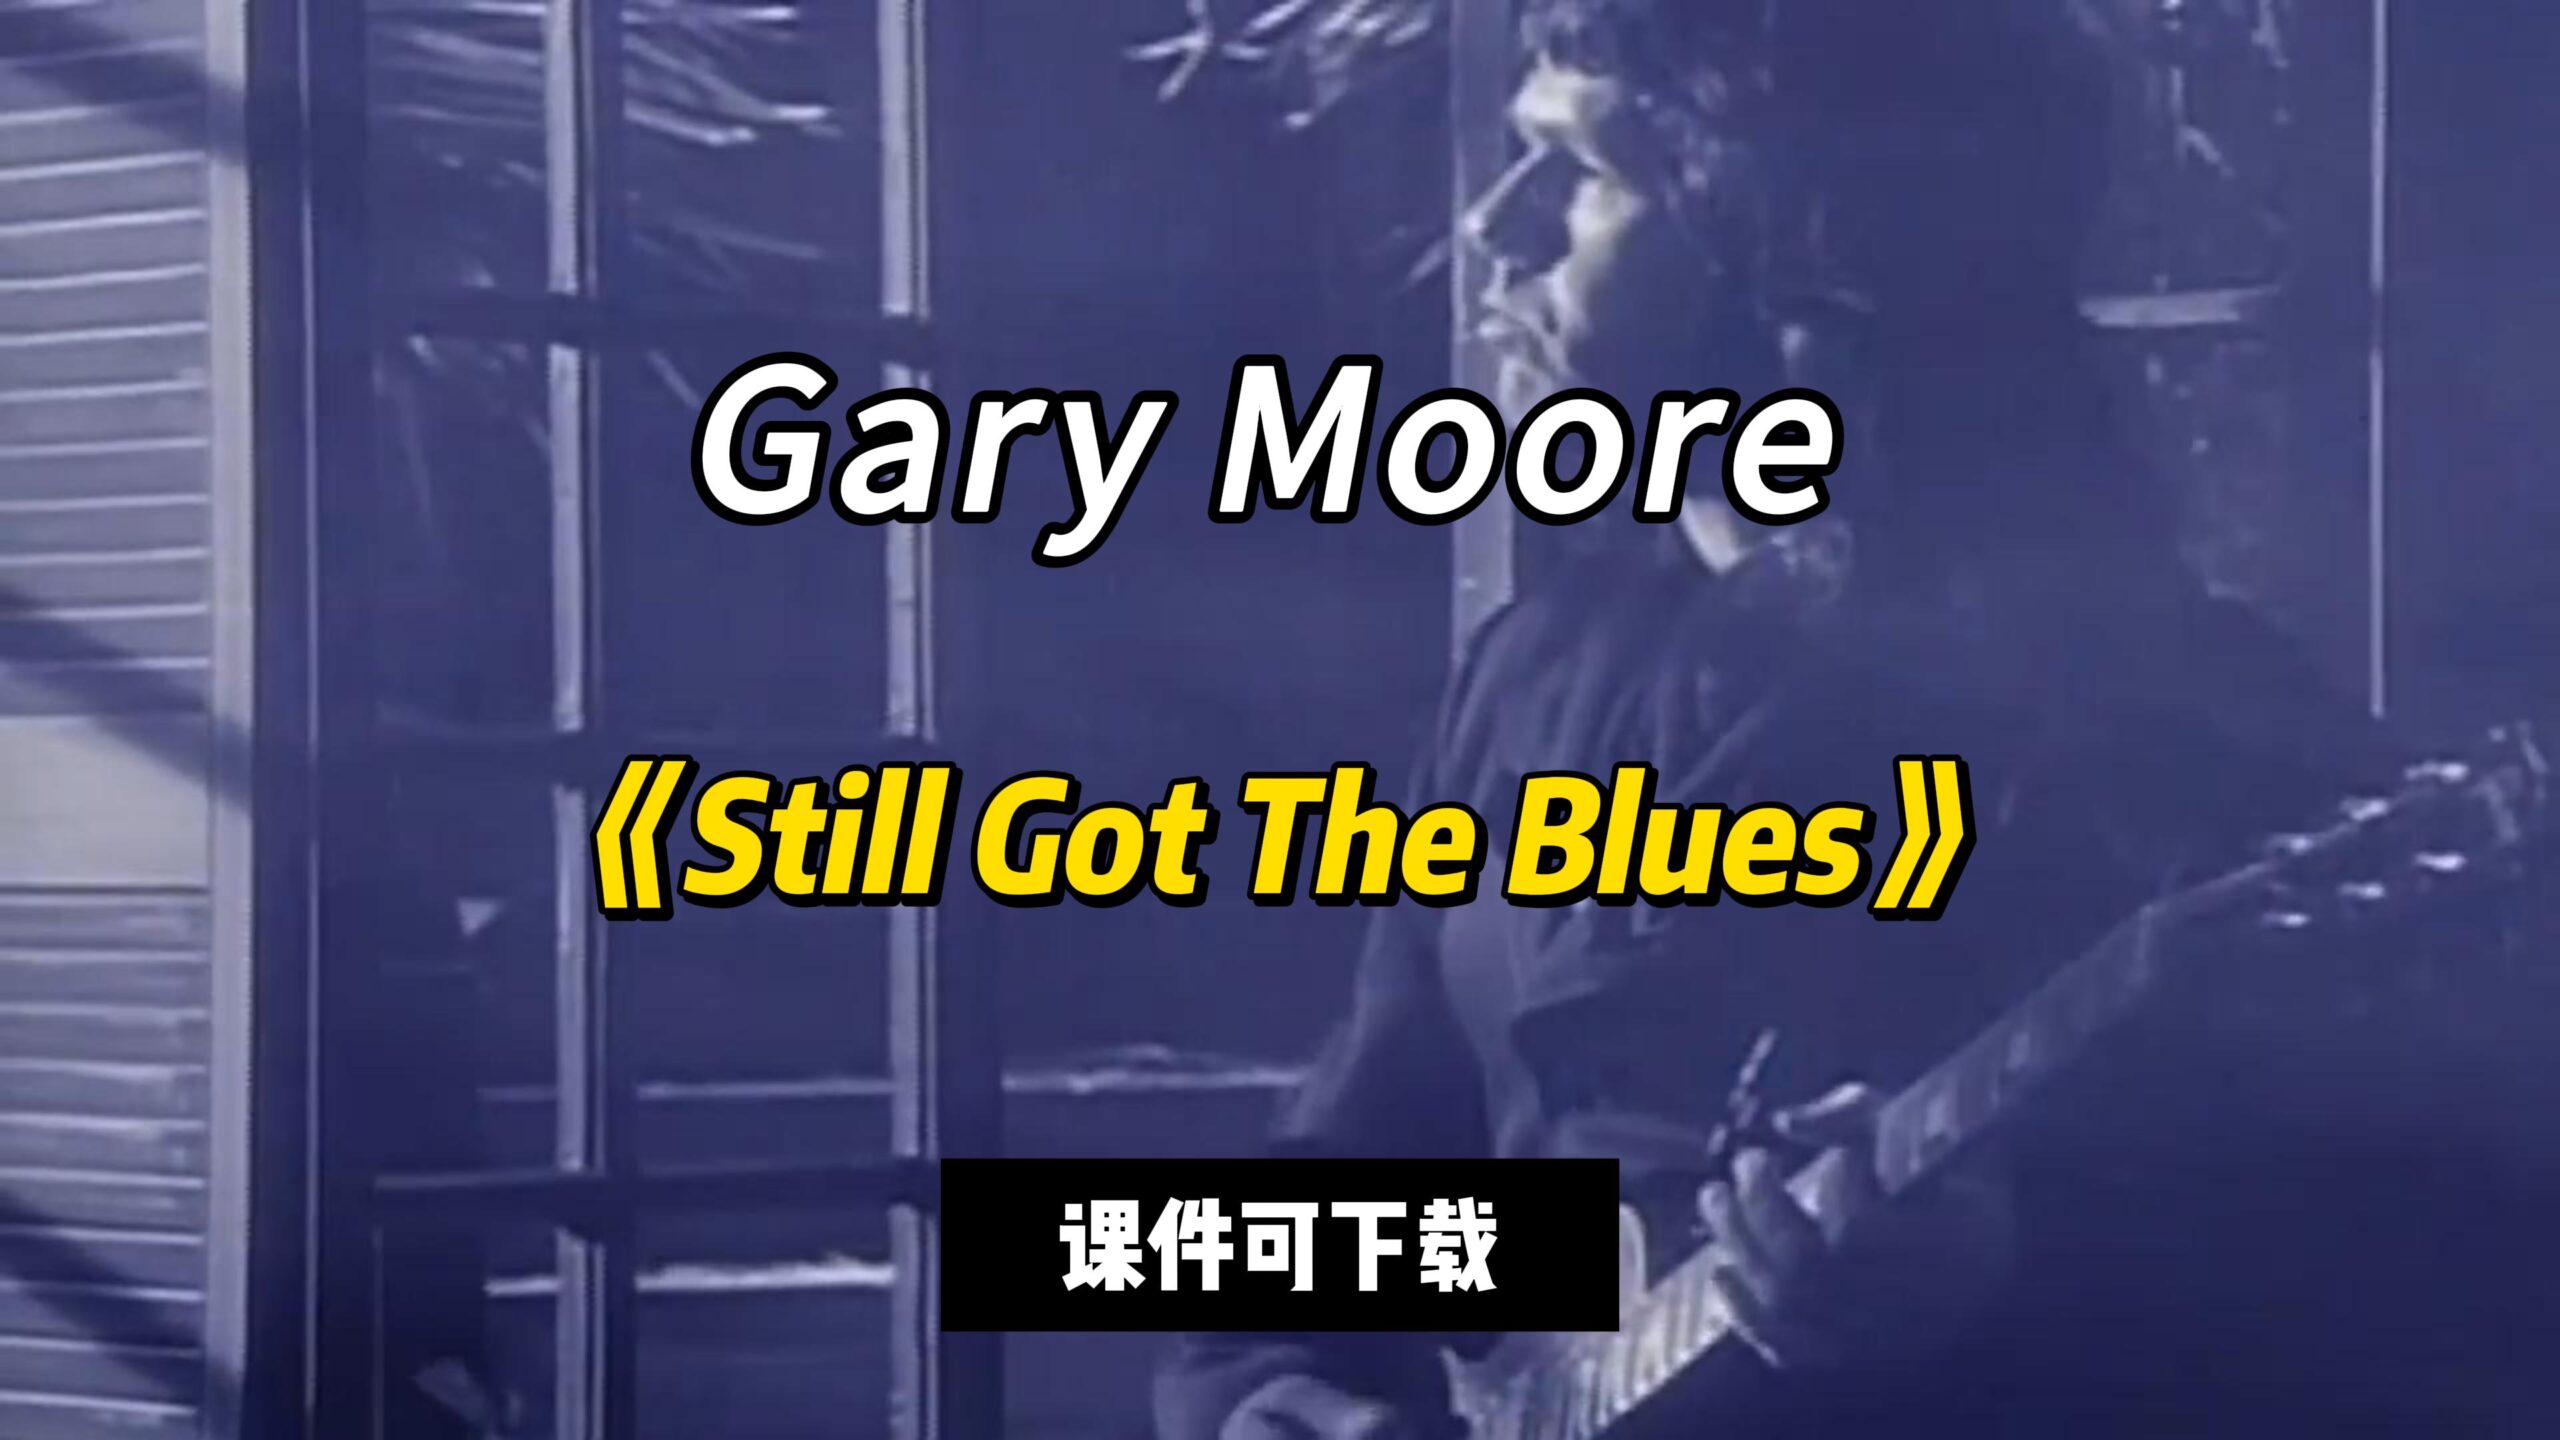 【课件可下载】《Still Got The Blues》Gary Moore-古桐博客